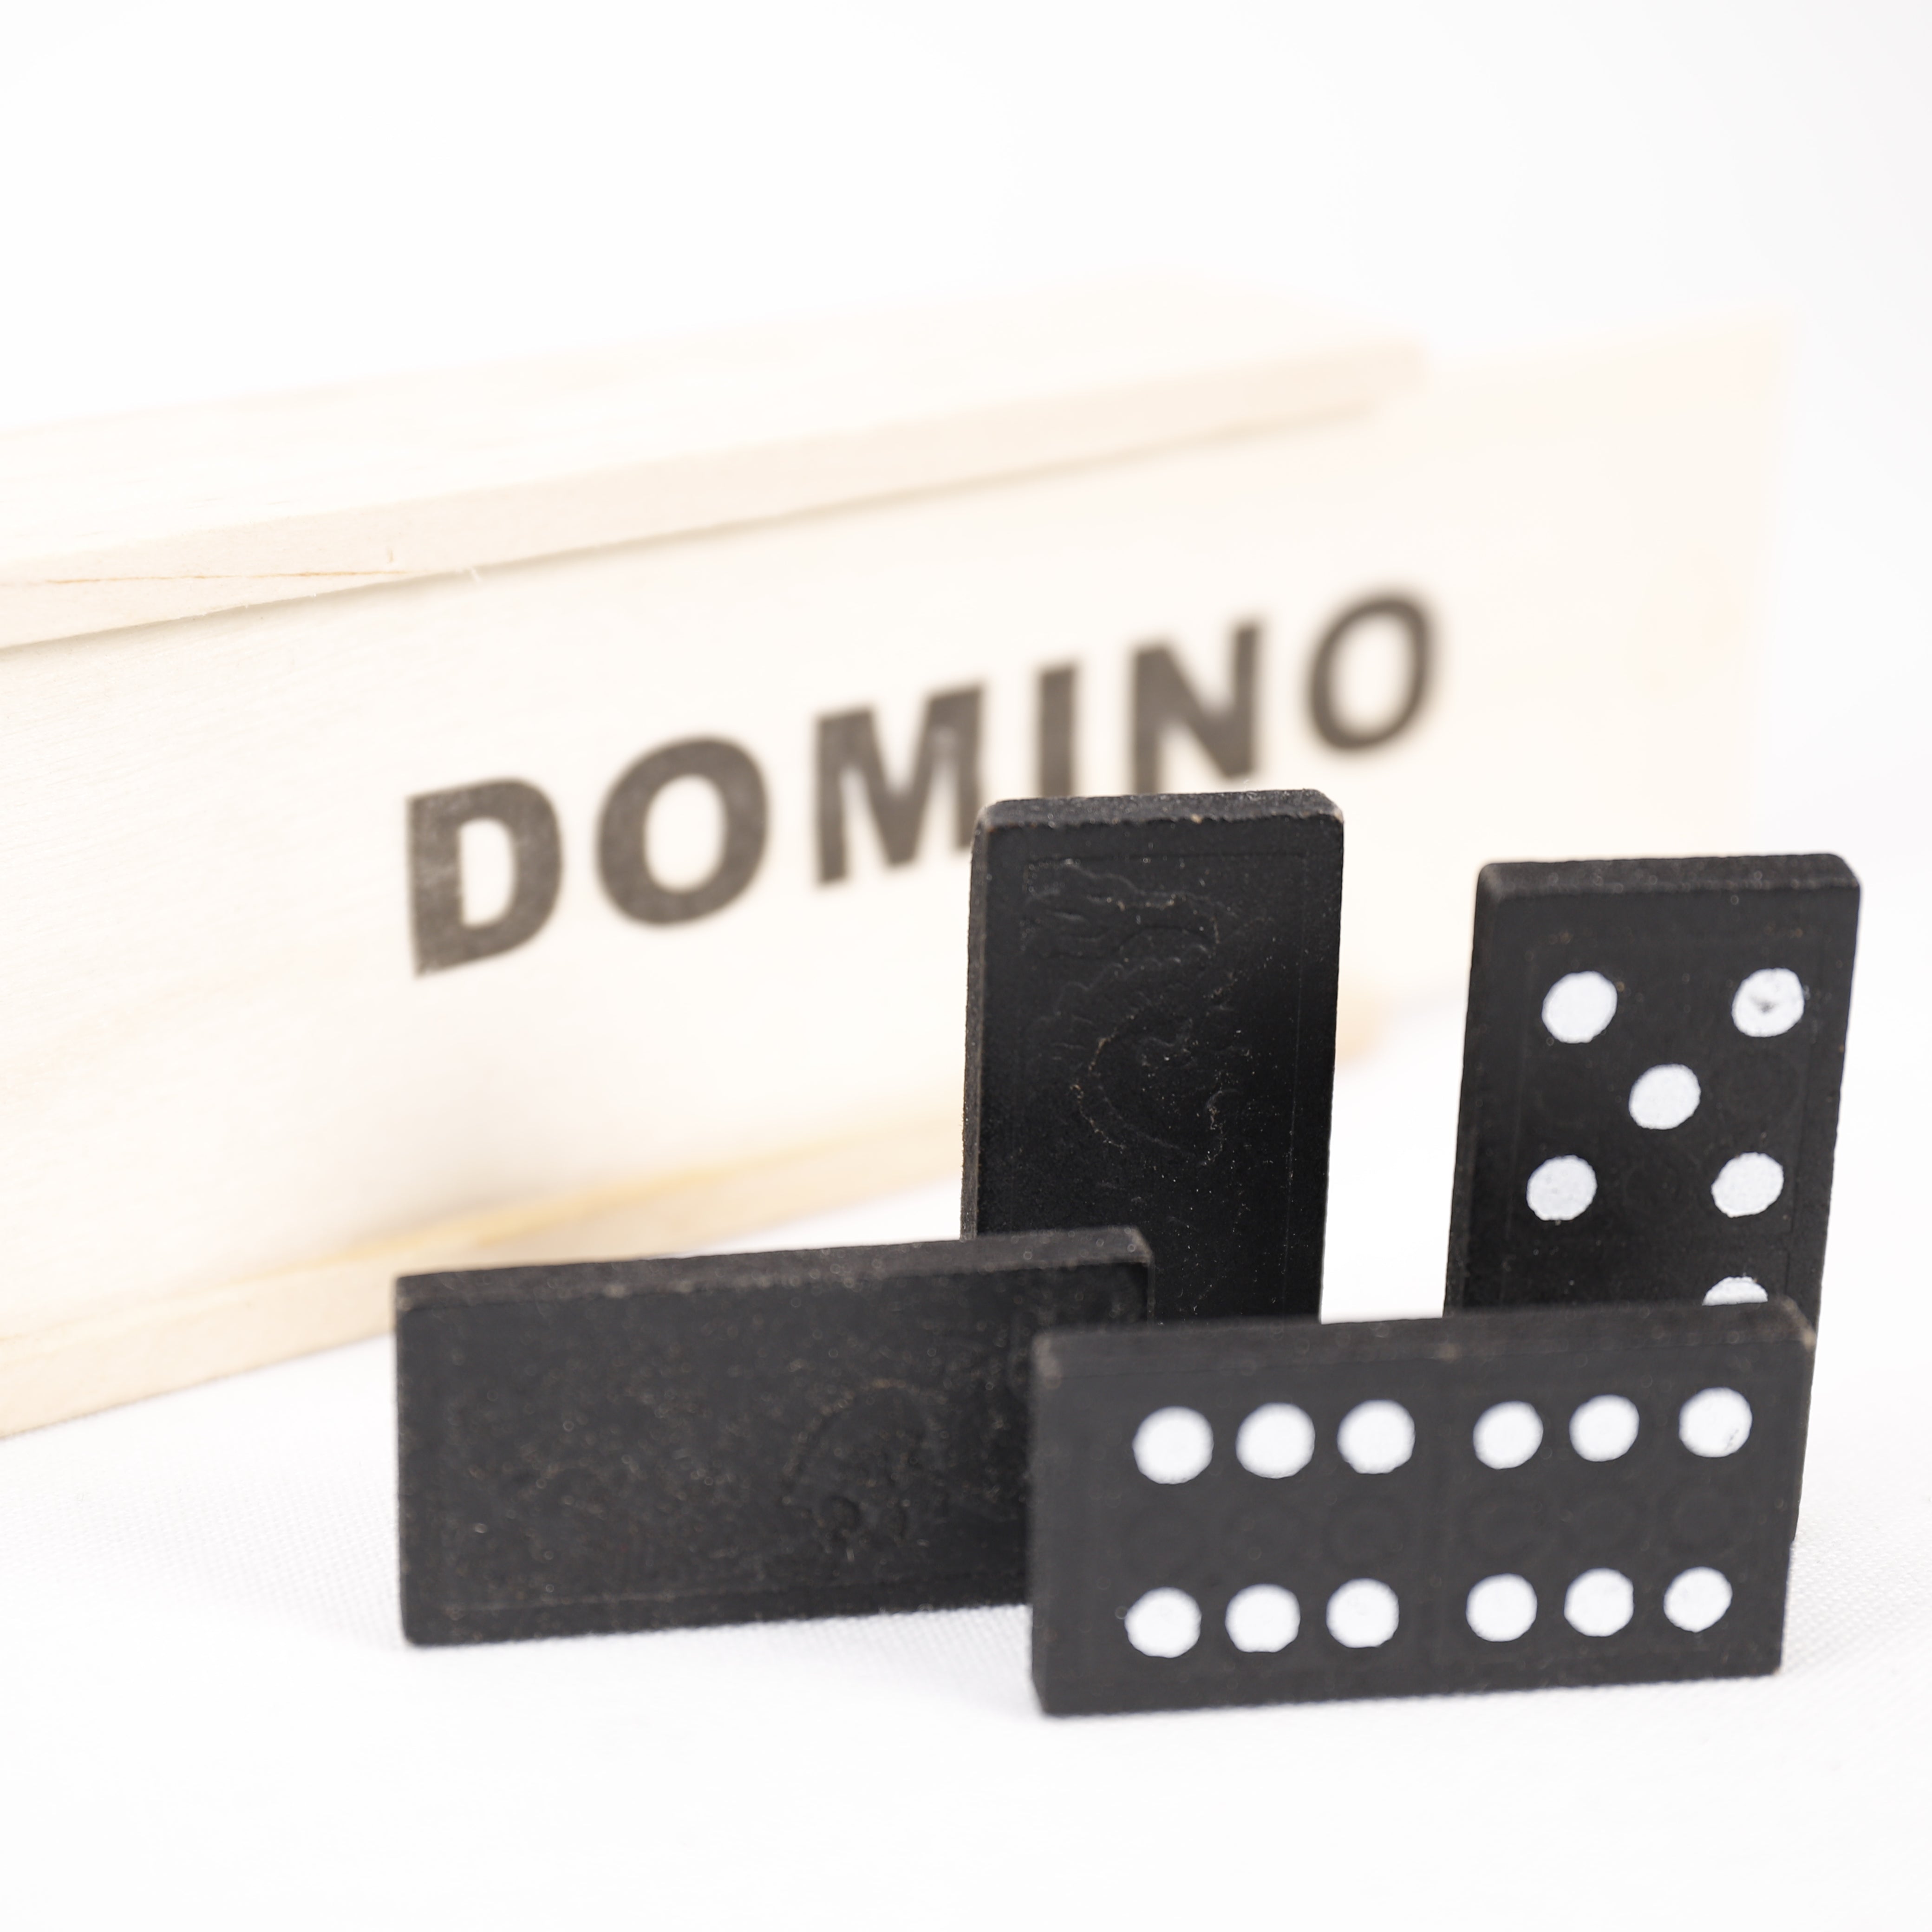 Dominospiel in Holzbox, 28 Spielsteine, Kreativ, Entdecken, Spielest, Spielzeug.